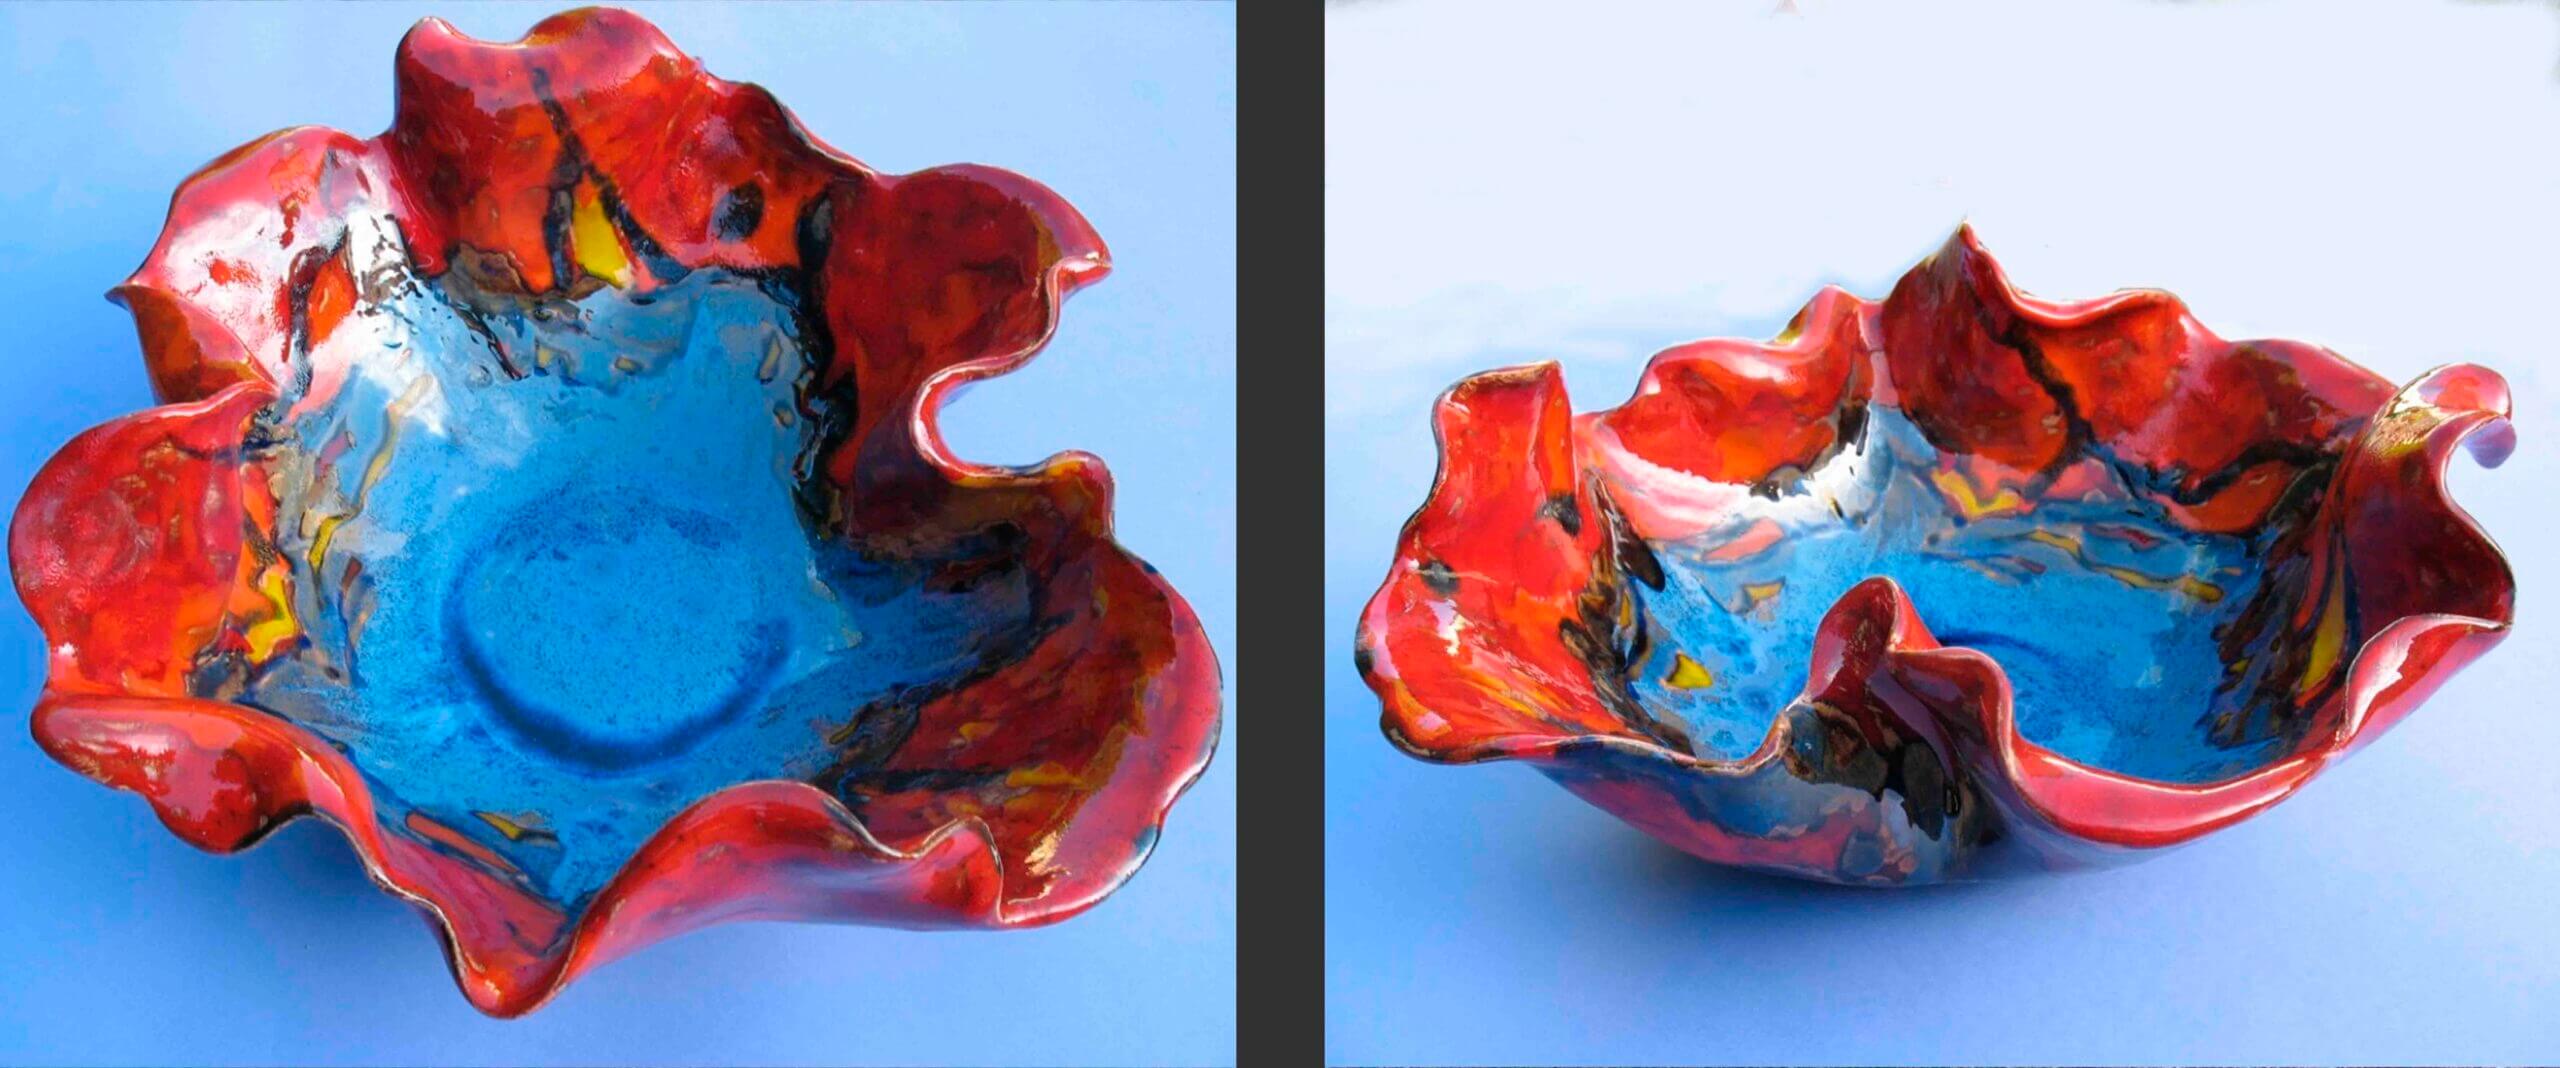 Ręcznie wykonane ceramiki Unikatowe wyroby ceramiczne Ceramiczne dzieła sztuki Tworzenie ceramiki na zamówienie Ceramika użytkowa Ceramika wypalana w wysokiej temperaturze Ceramika jako prezent